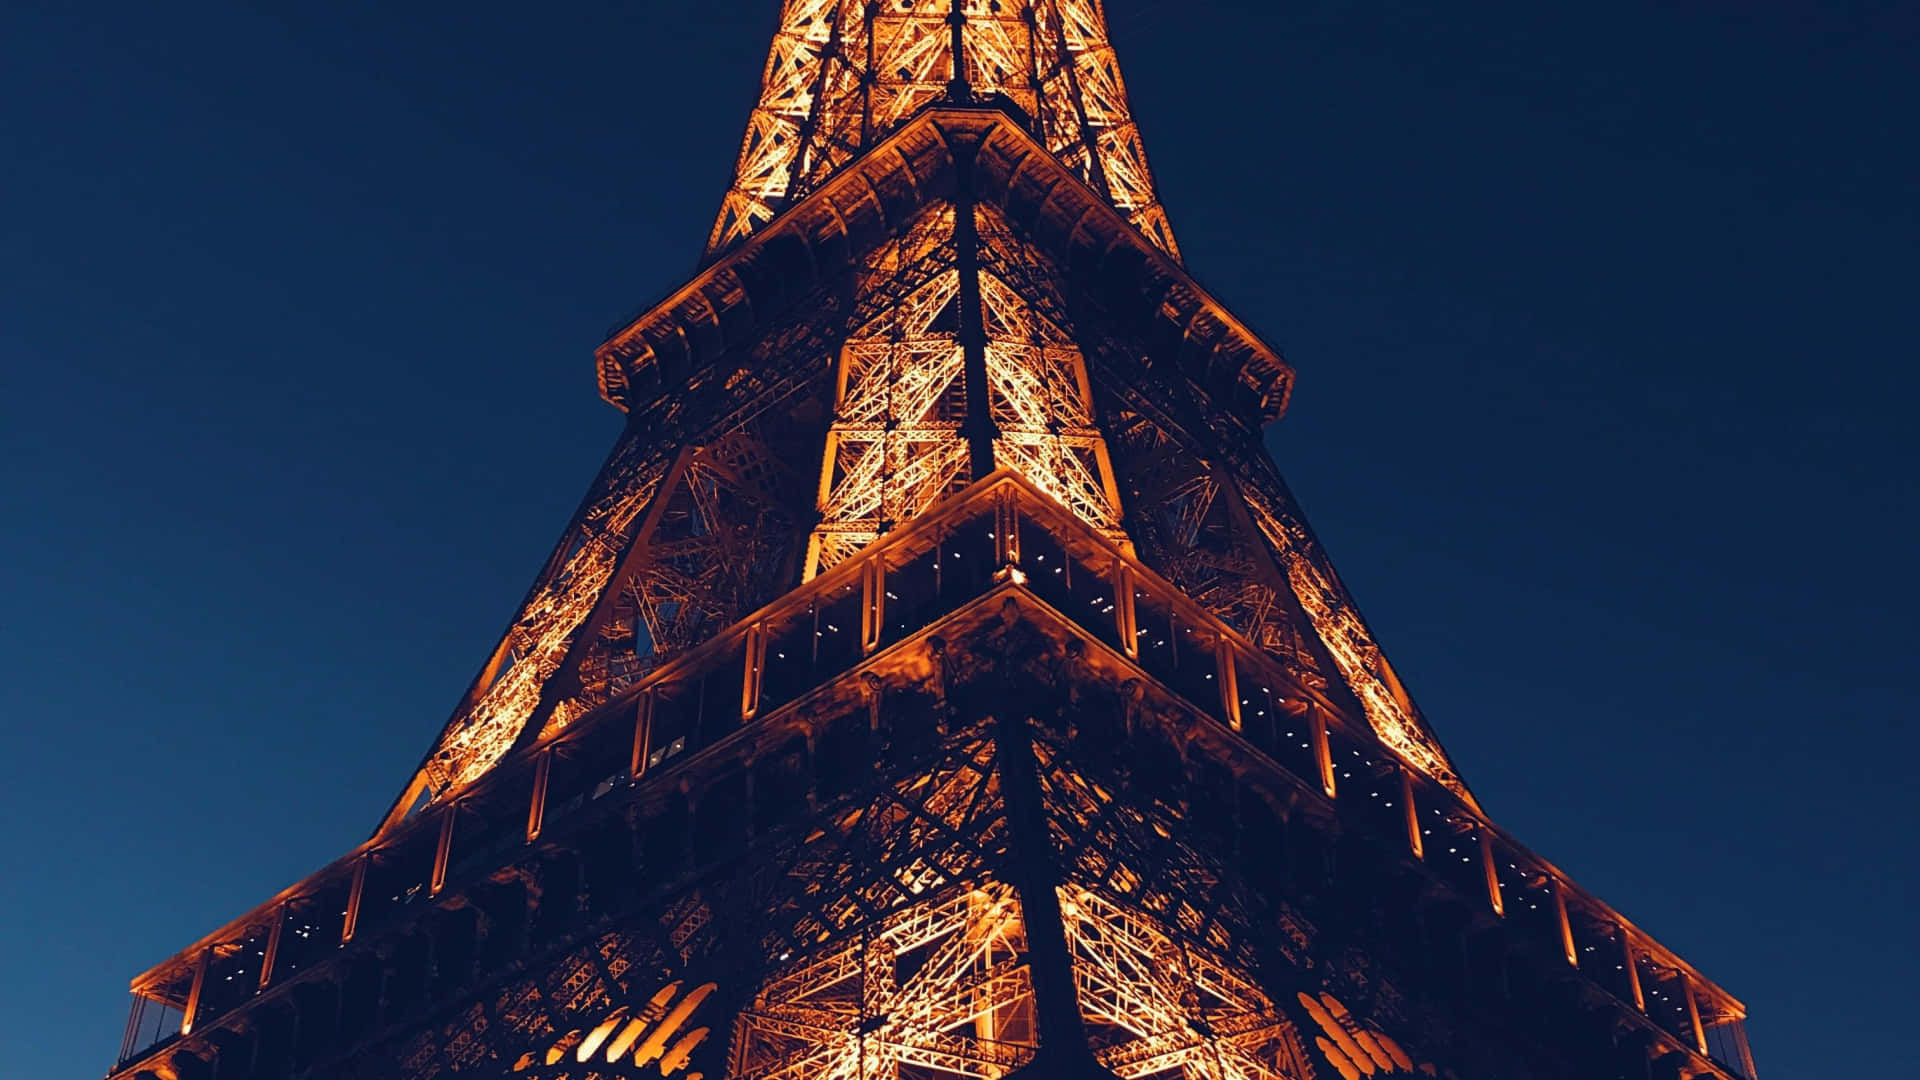 Verbringedie Nacht Unter Den Sternen Und Dem Spektakulären Eiffelturm.